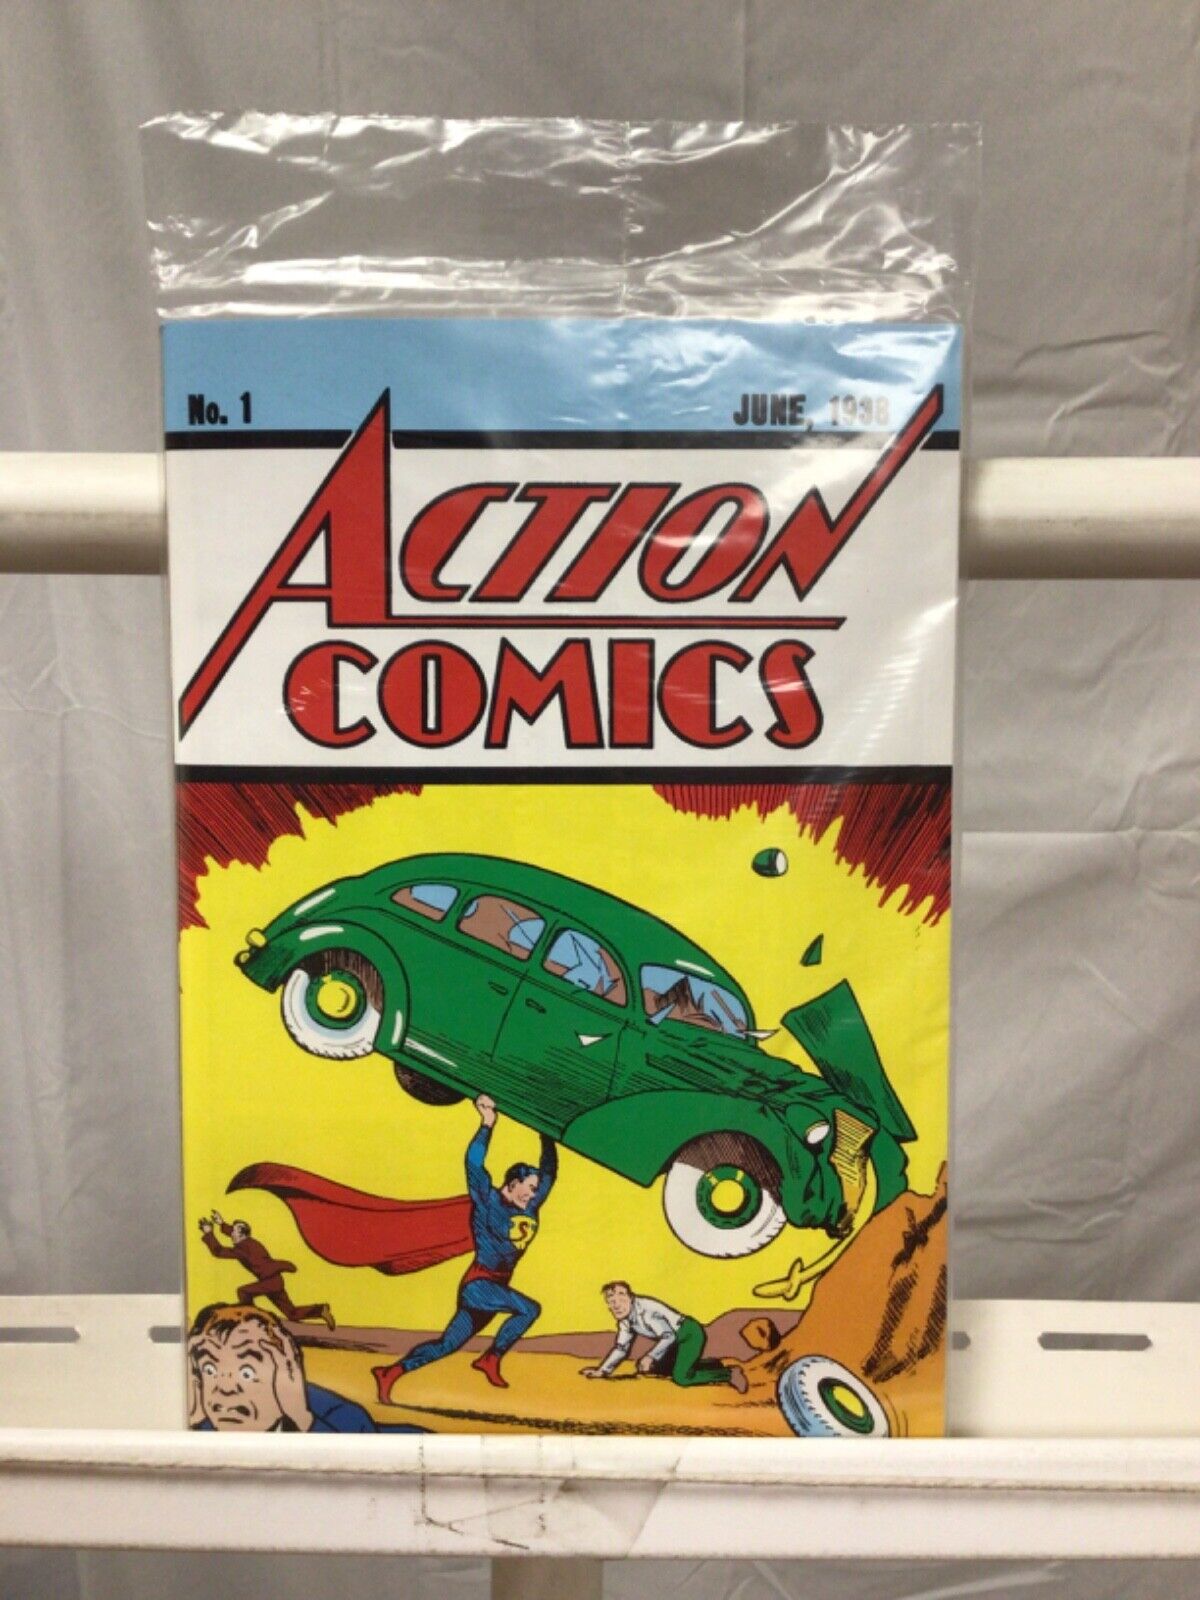 Superman Action Comics #1 Loot Crate June 1938 Sealed Reprint W/ COA